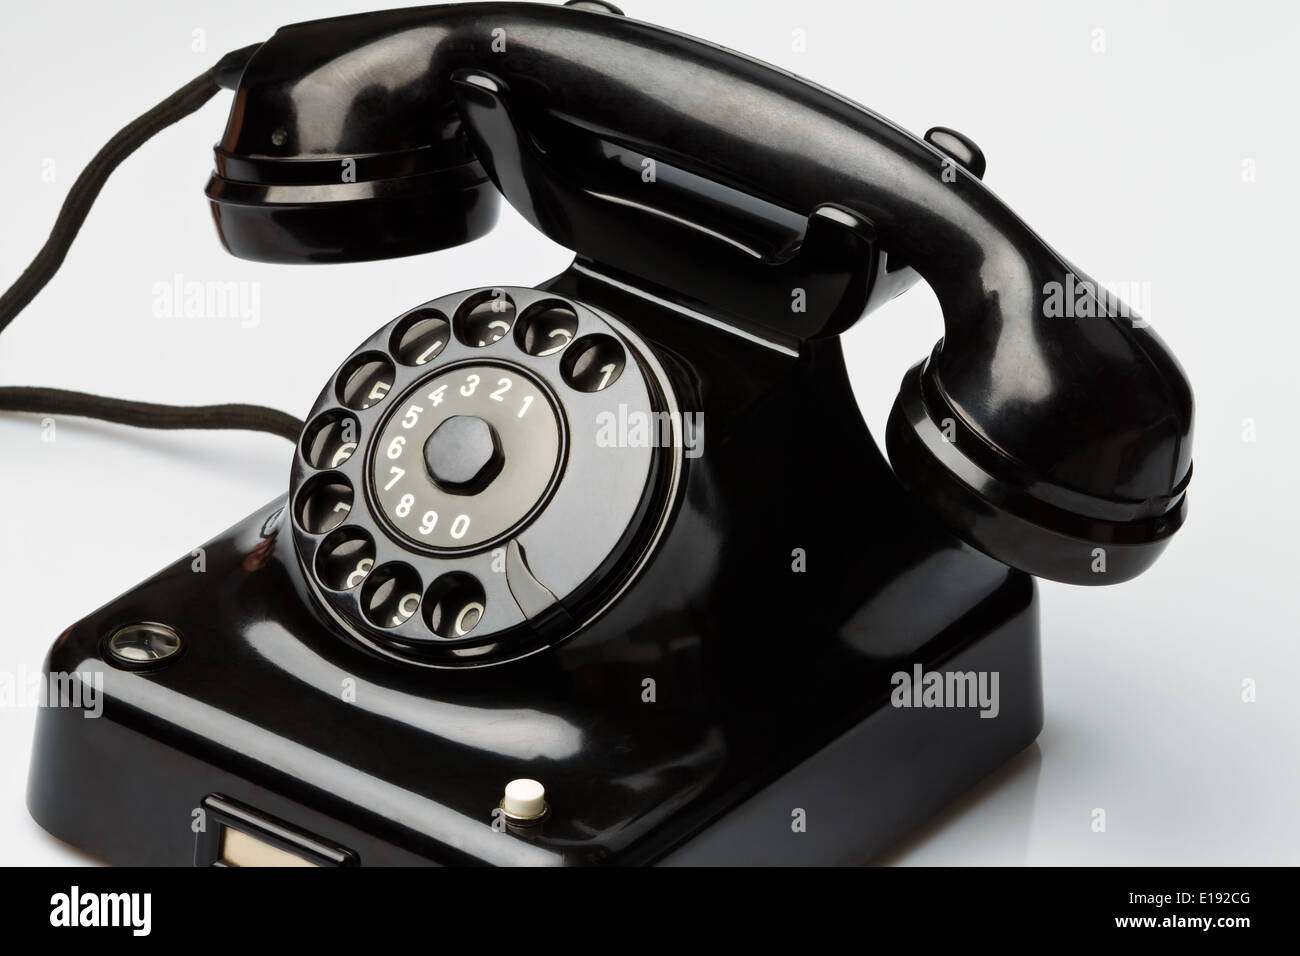 Ein antikes, altes Festnetz Telephon. Telefon auf weiﬂem Hintergrund. Stock Photo